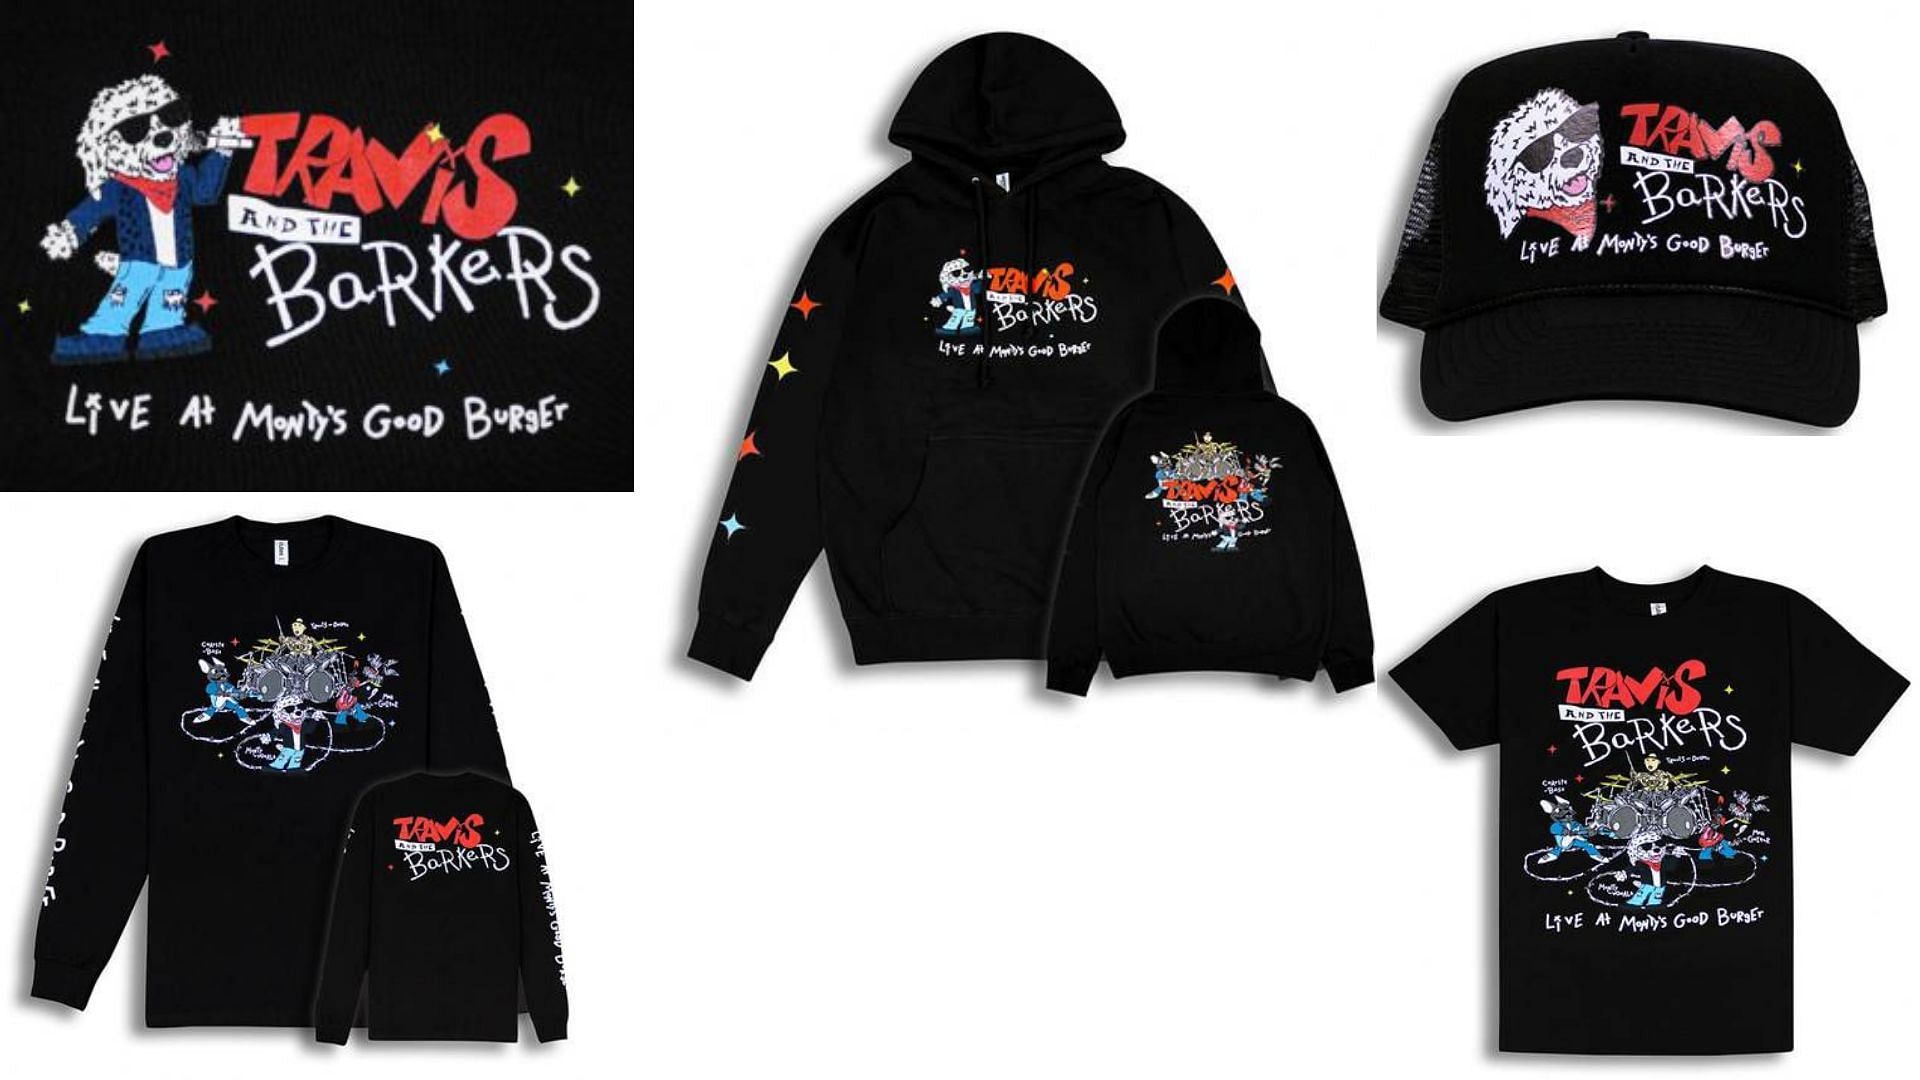 Travis Barker x Monty&#039;s Good Burger limited edition merchandise (Image via Sportskeeda)